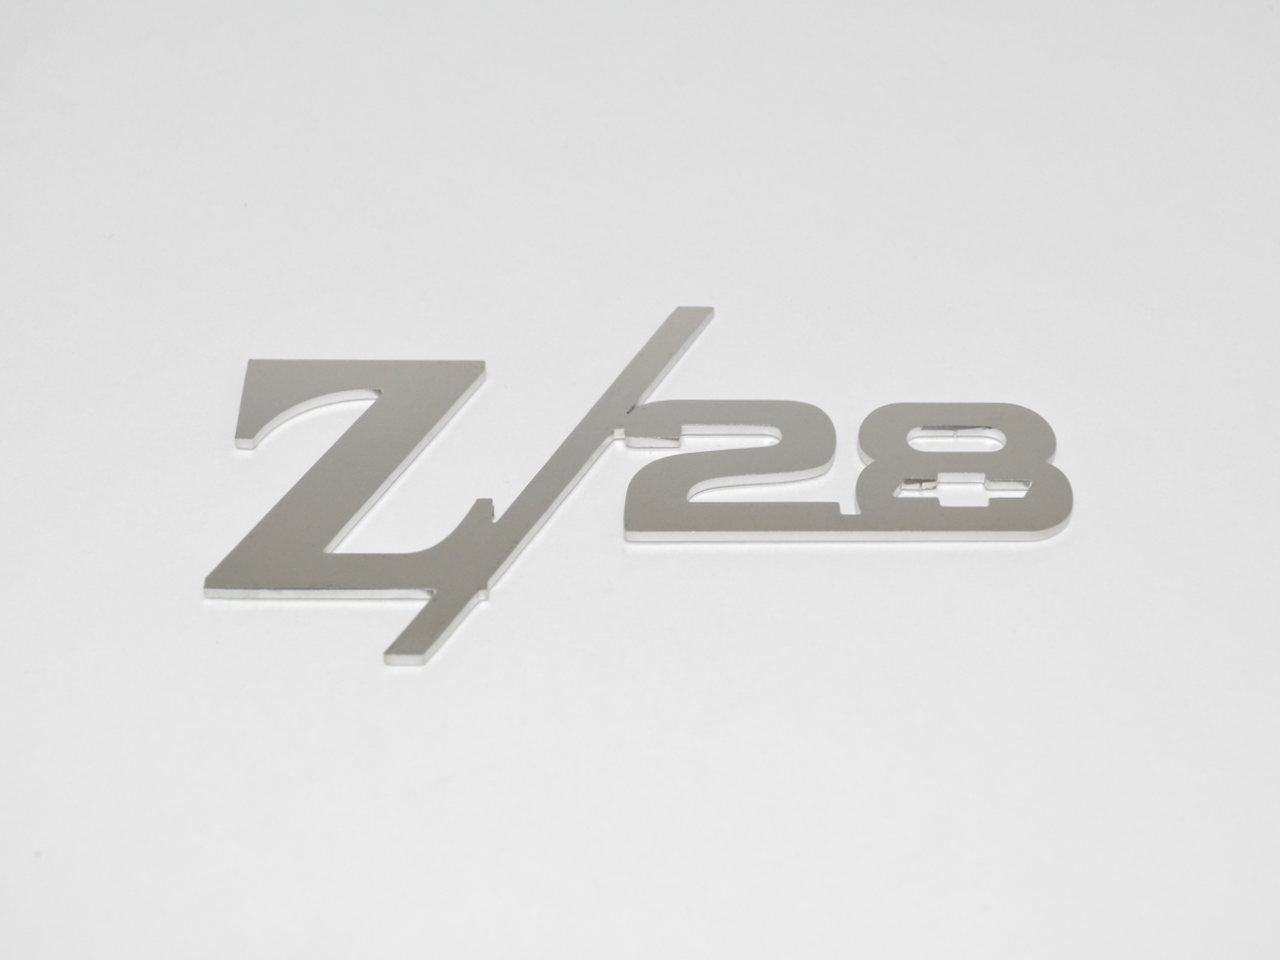 Z/28 Rear Panel Emblem With Bowtie; - MorrisClassic.com, emblem